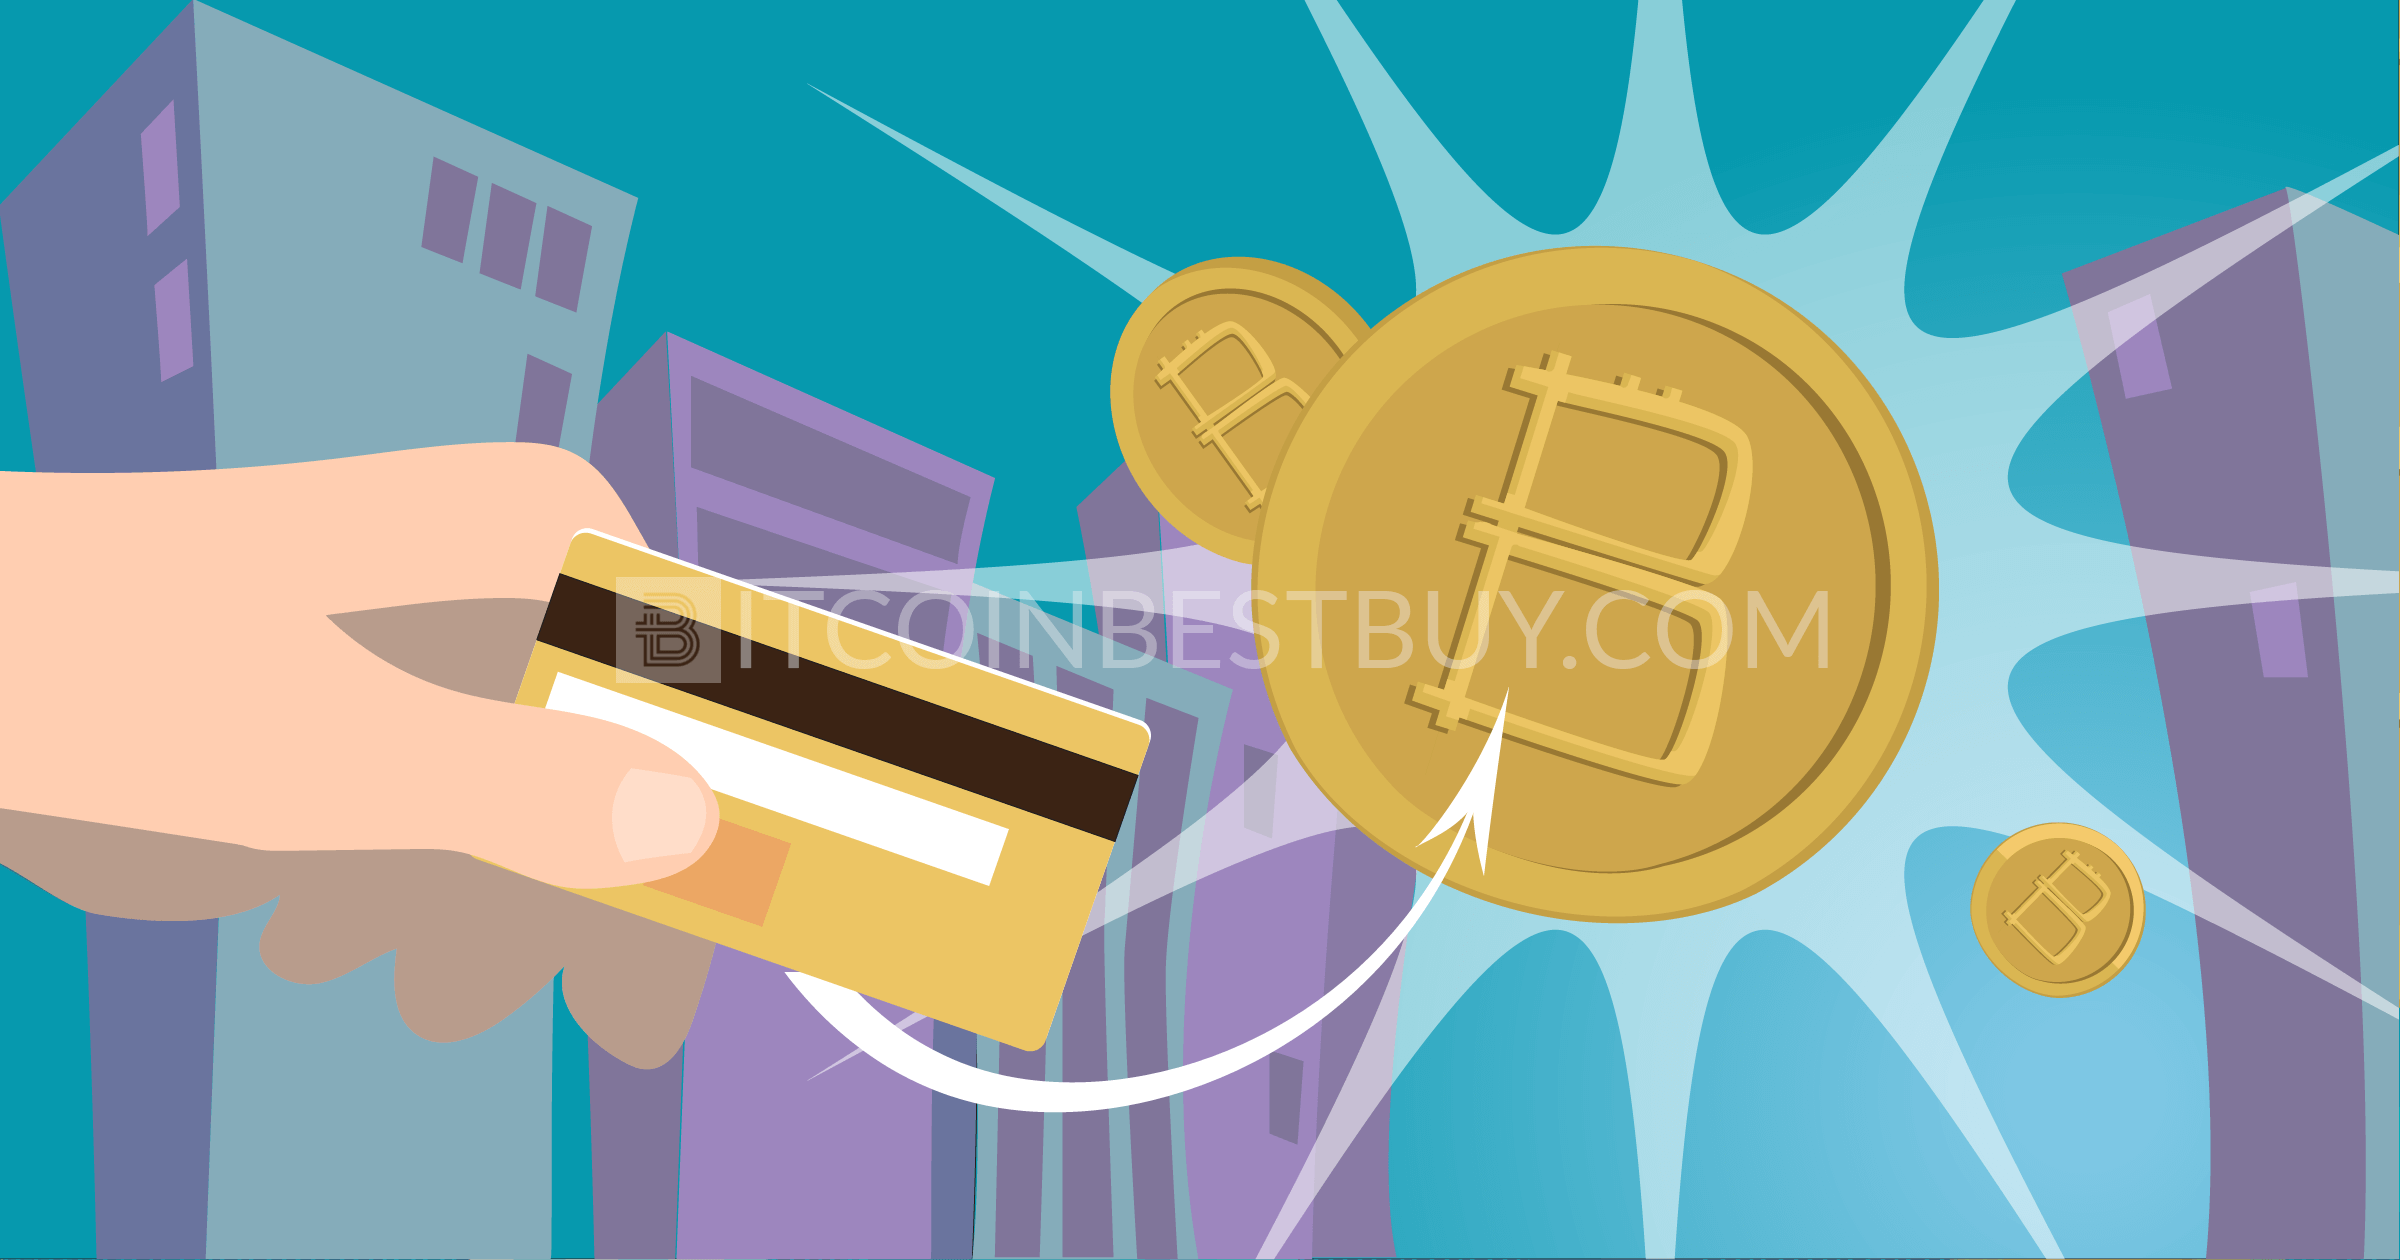 buy bitcoin with stolen debit card